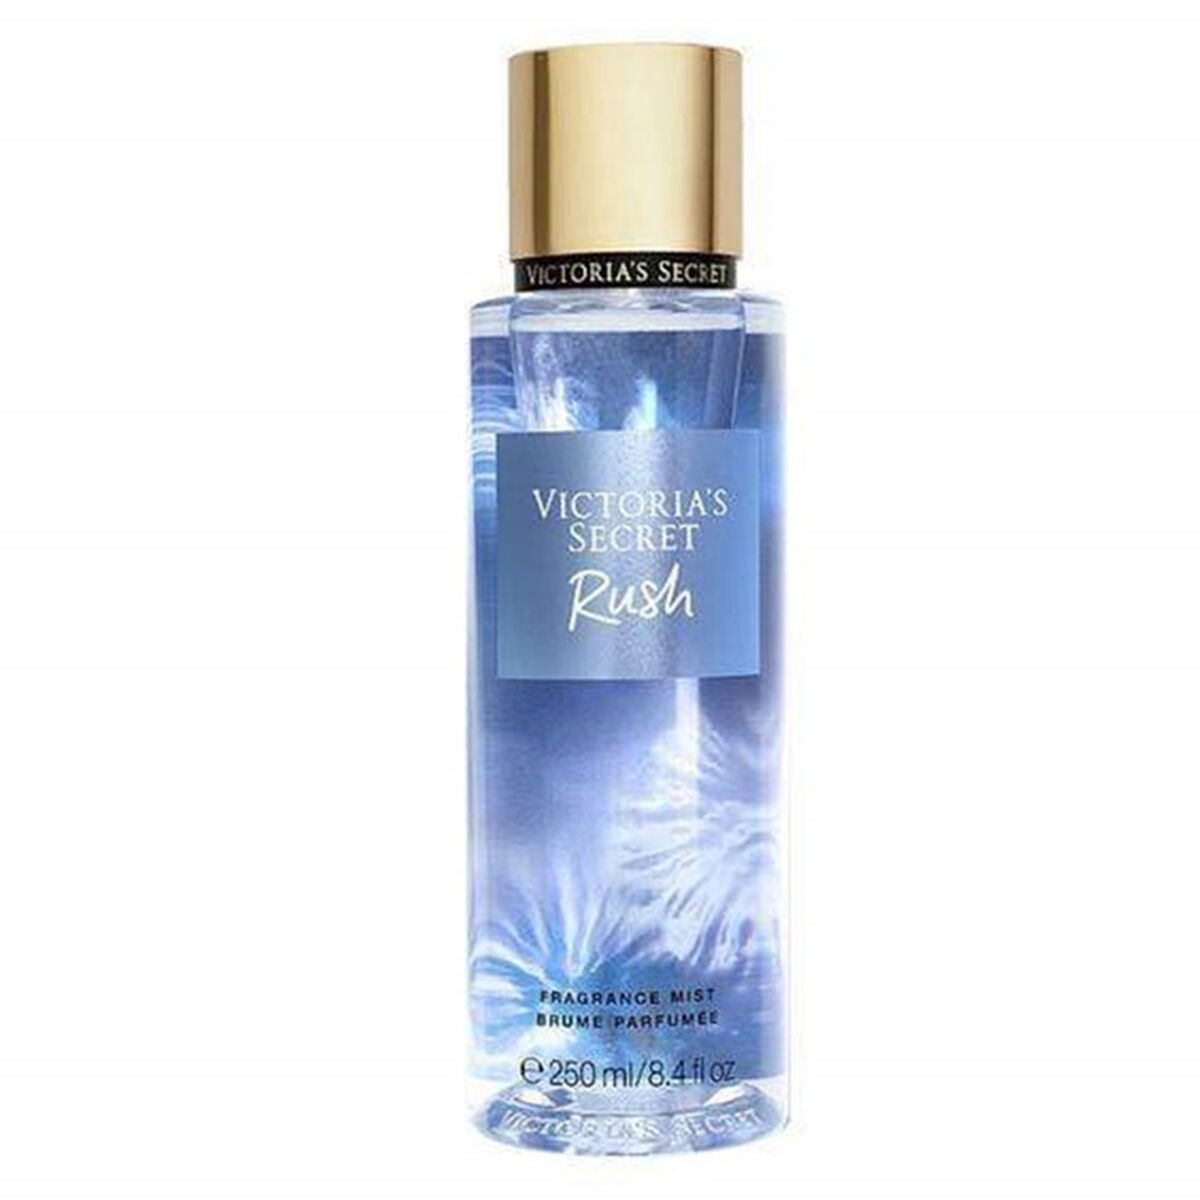 Body Mist Victoria's Secret Rush 250 ml